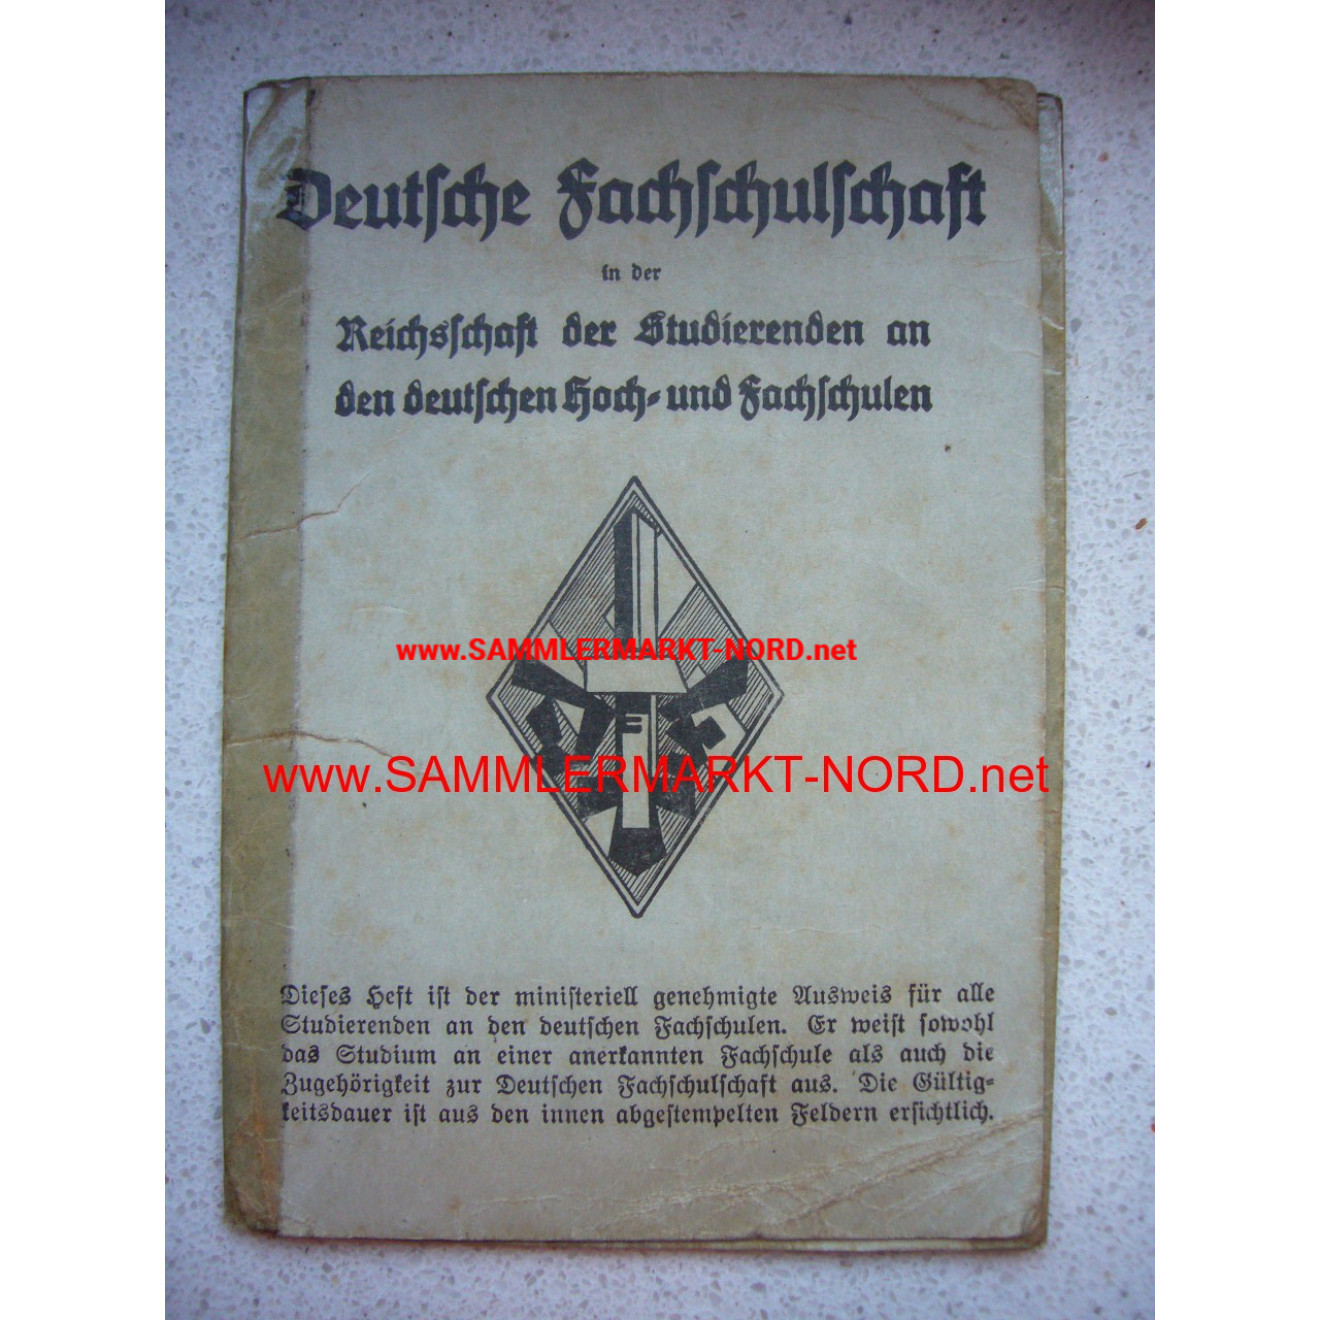 Deutsche Fachschulschaft - Member card